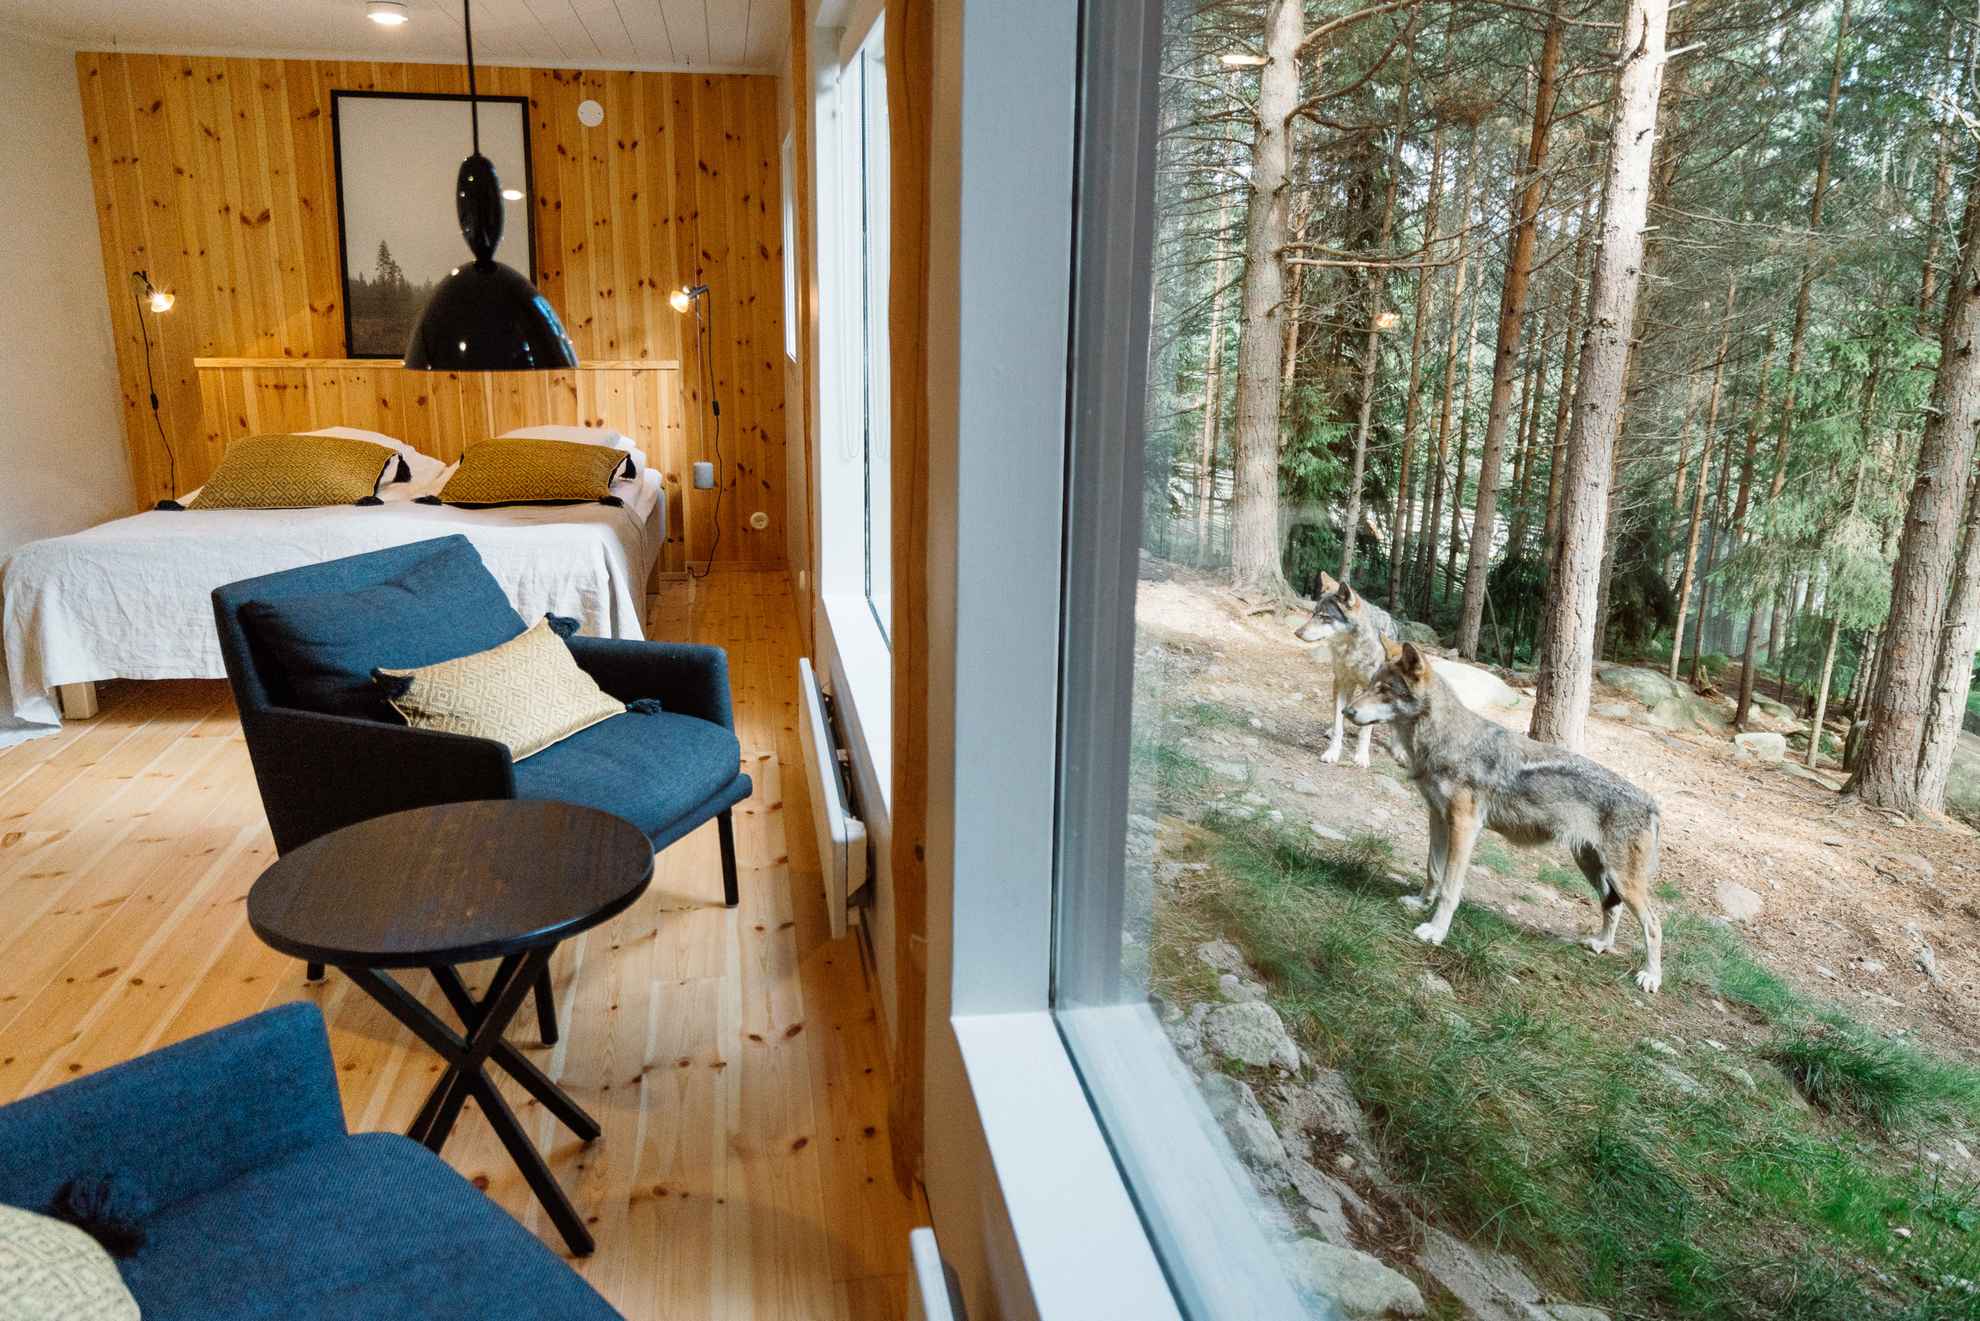 Une chambre d'hôtel avec des fenêtres panoramiques donnant sur l'enclos des loups. Des loups se tiennent devant la fenêtre.